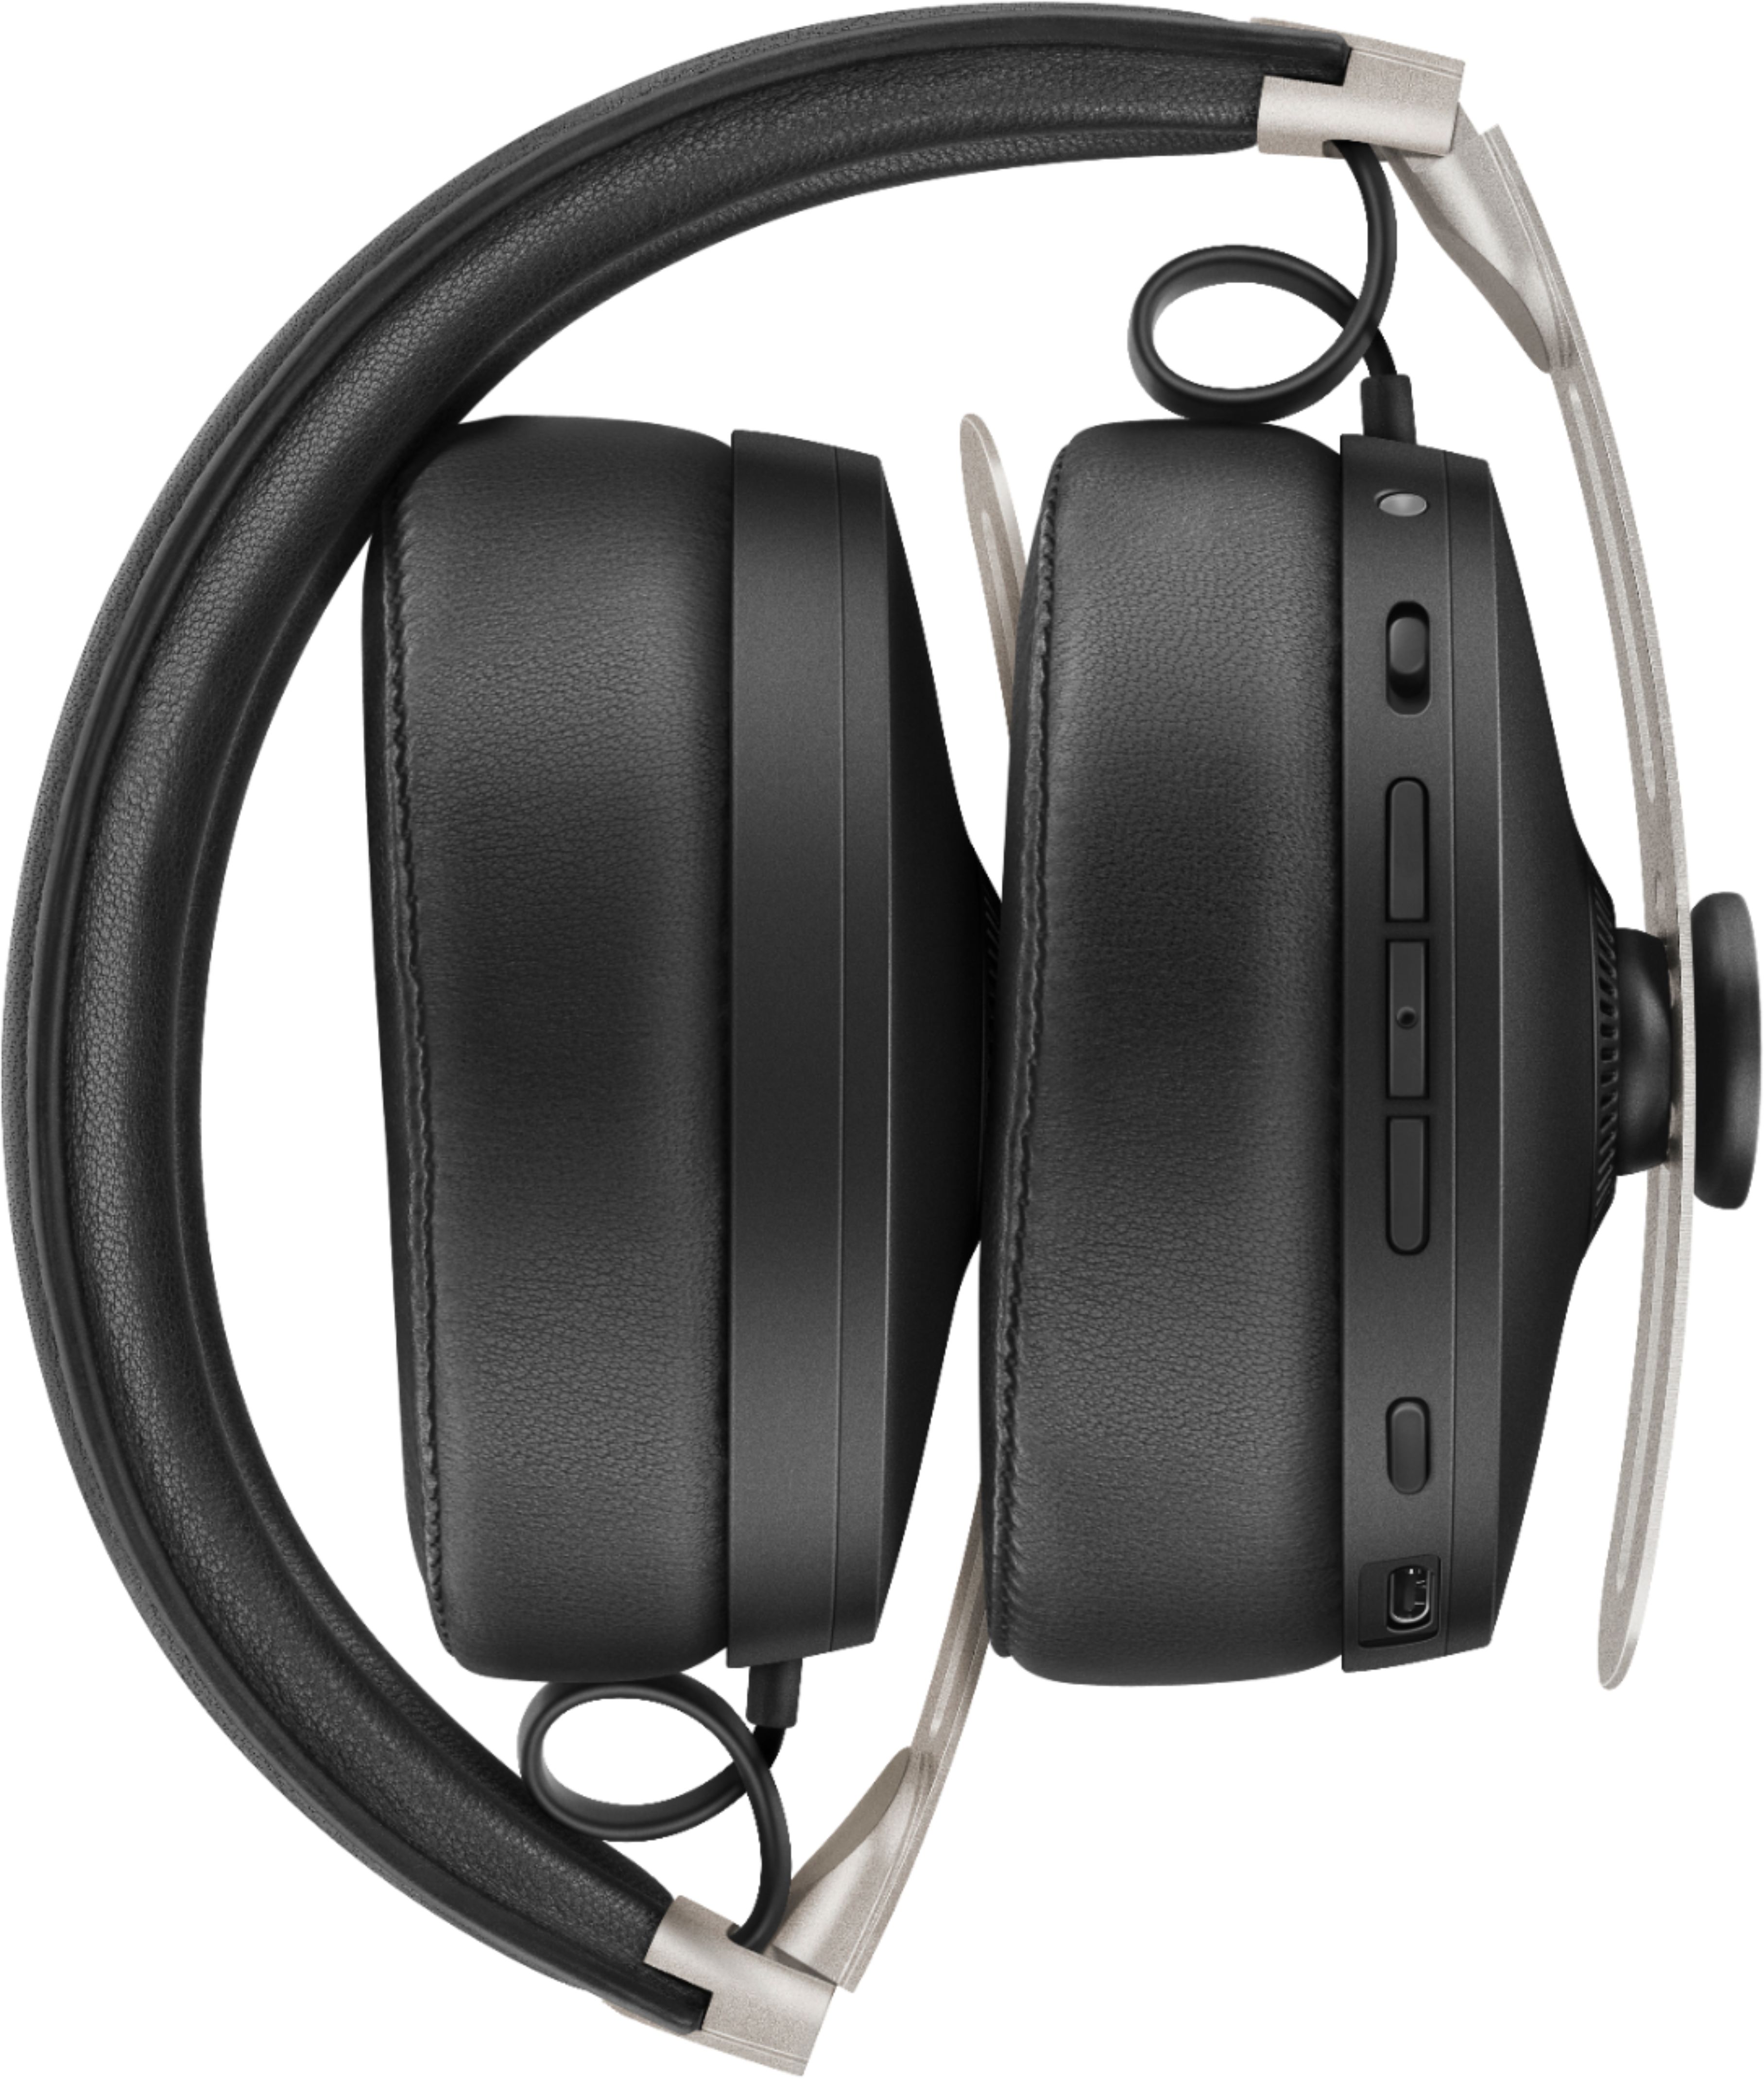 Sennheiser - MOMENTUM Wireless Noise-Canceling Over-the-Ear Headphones -  Black